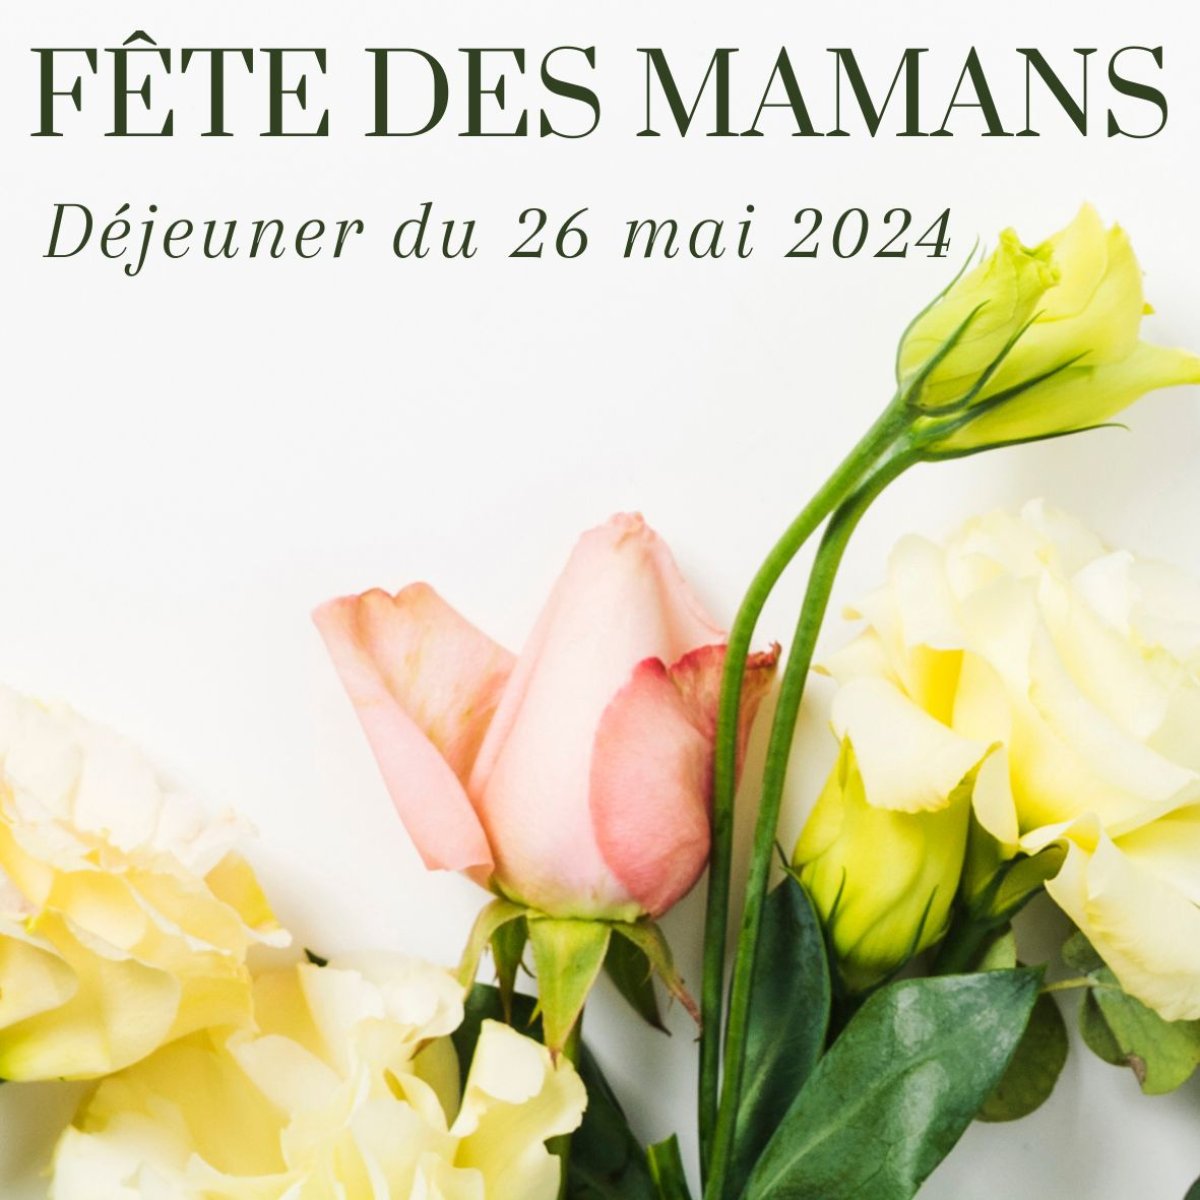 Fête des mères - Hotels Vatel France